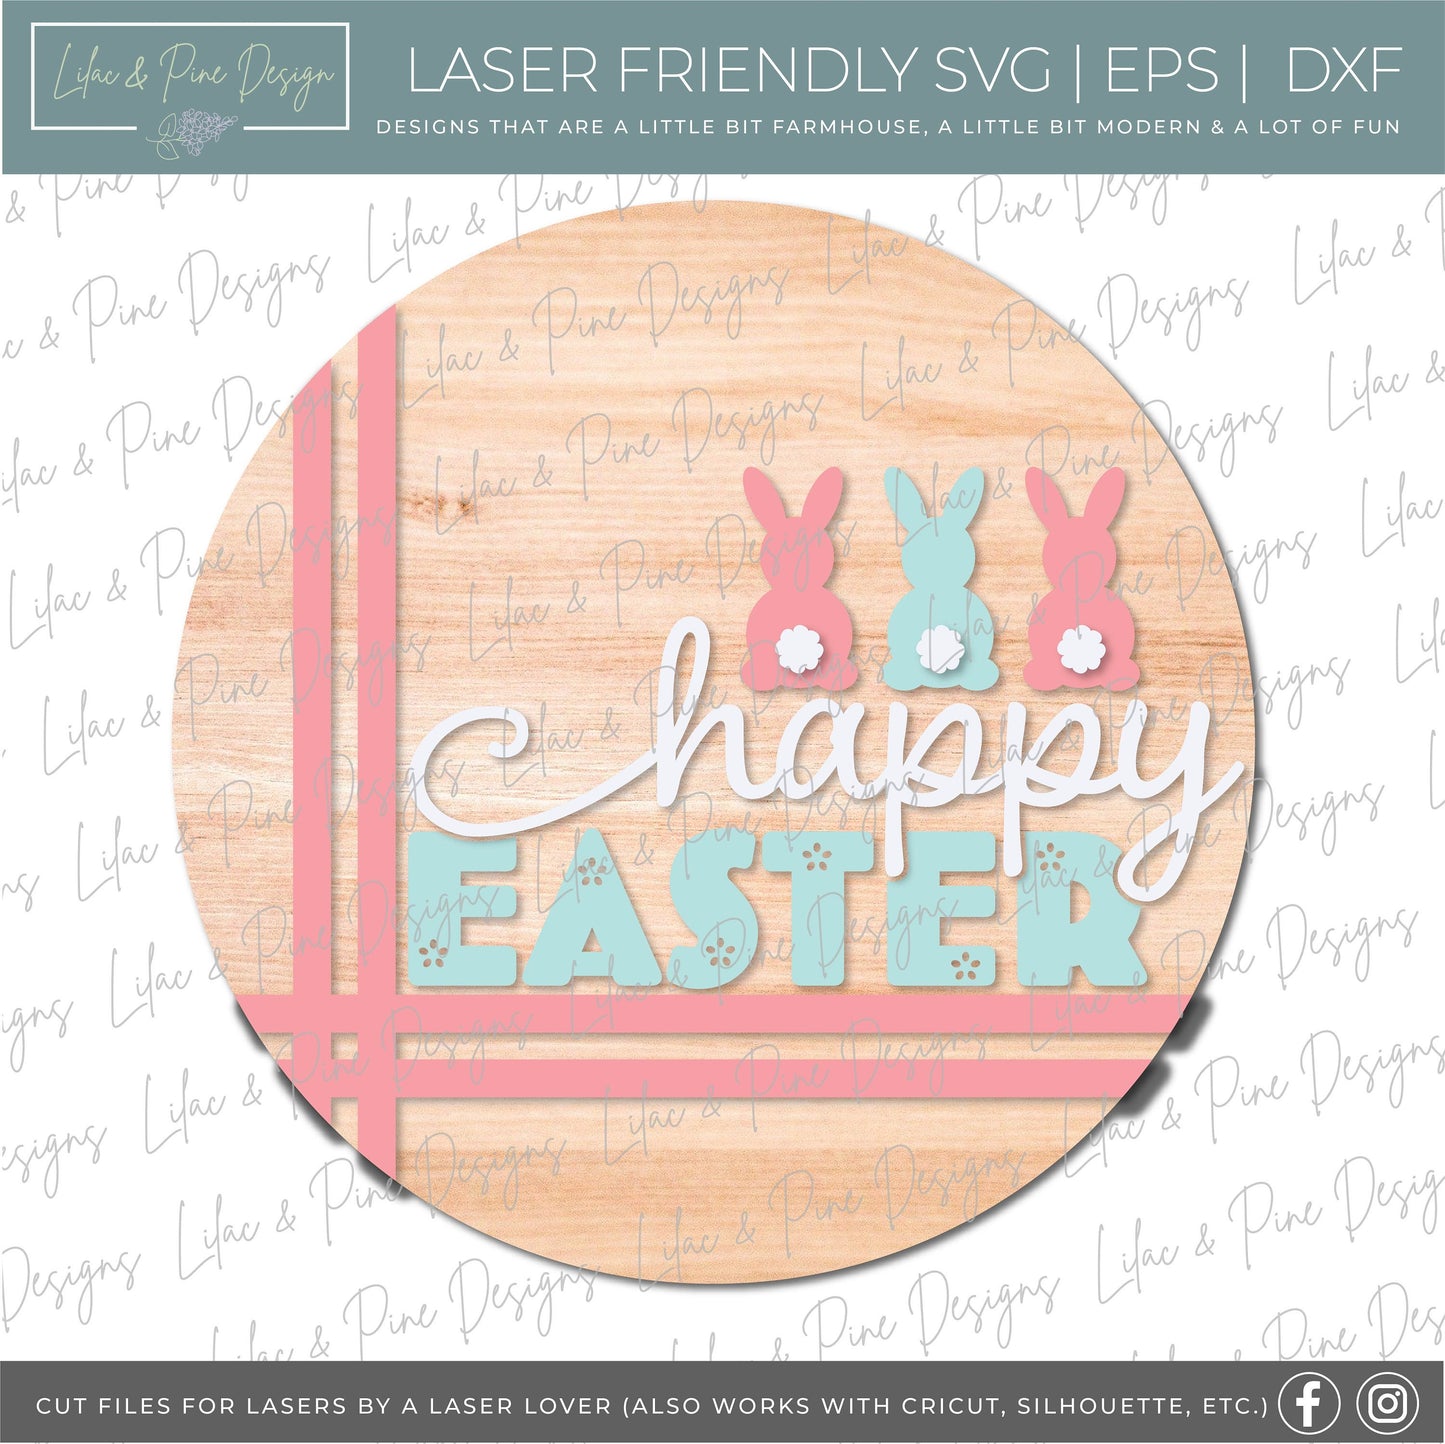 happy Easter door hanger, bunny porch sign SVG, round Easter bunny sign, Farmhouse Easter decor, Glowforge svg files, laser cut file